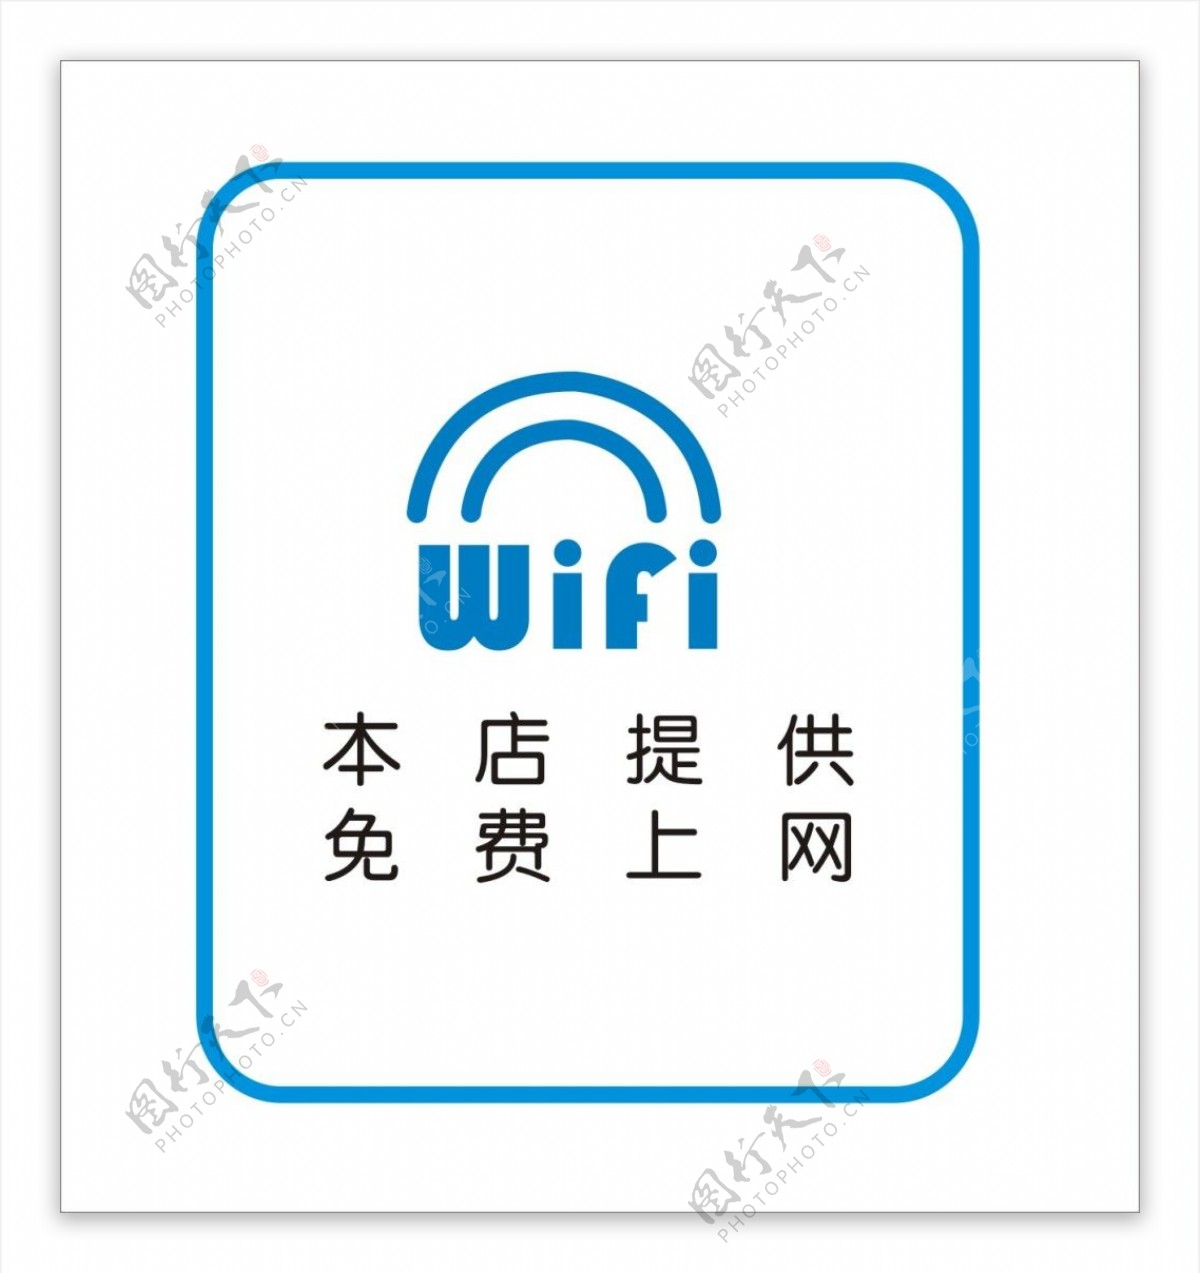 WiFi标志